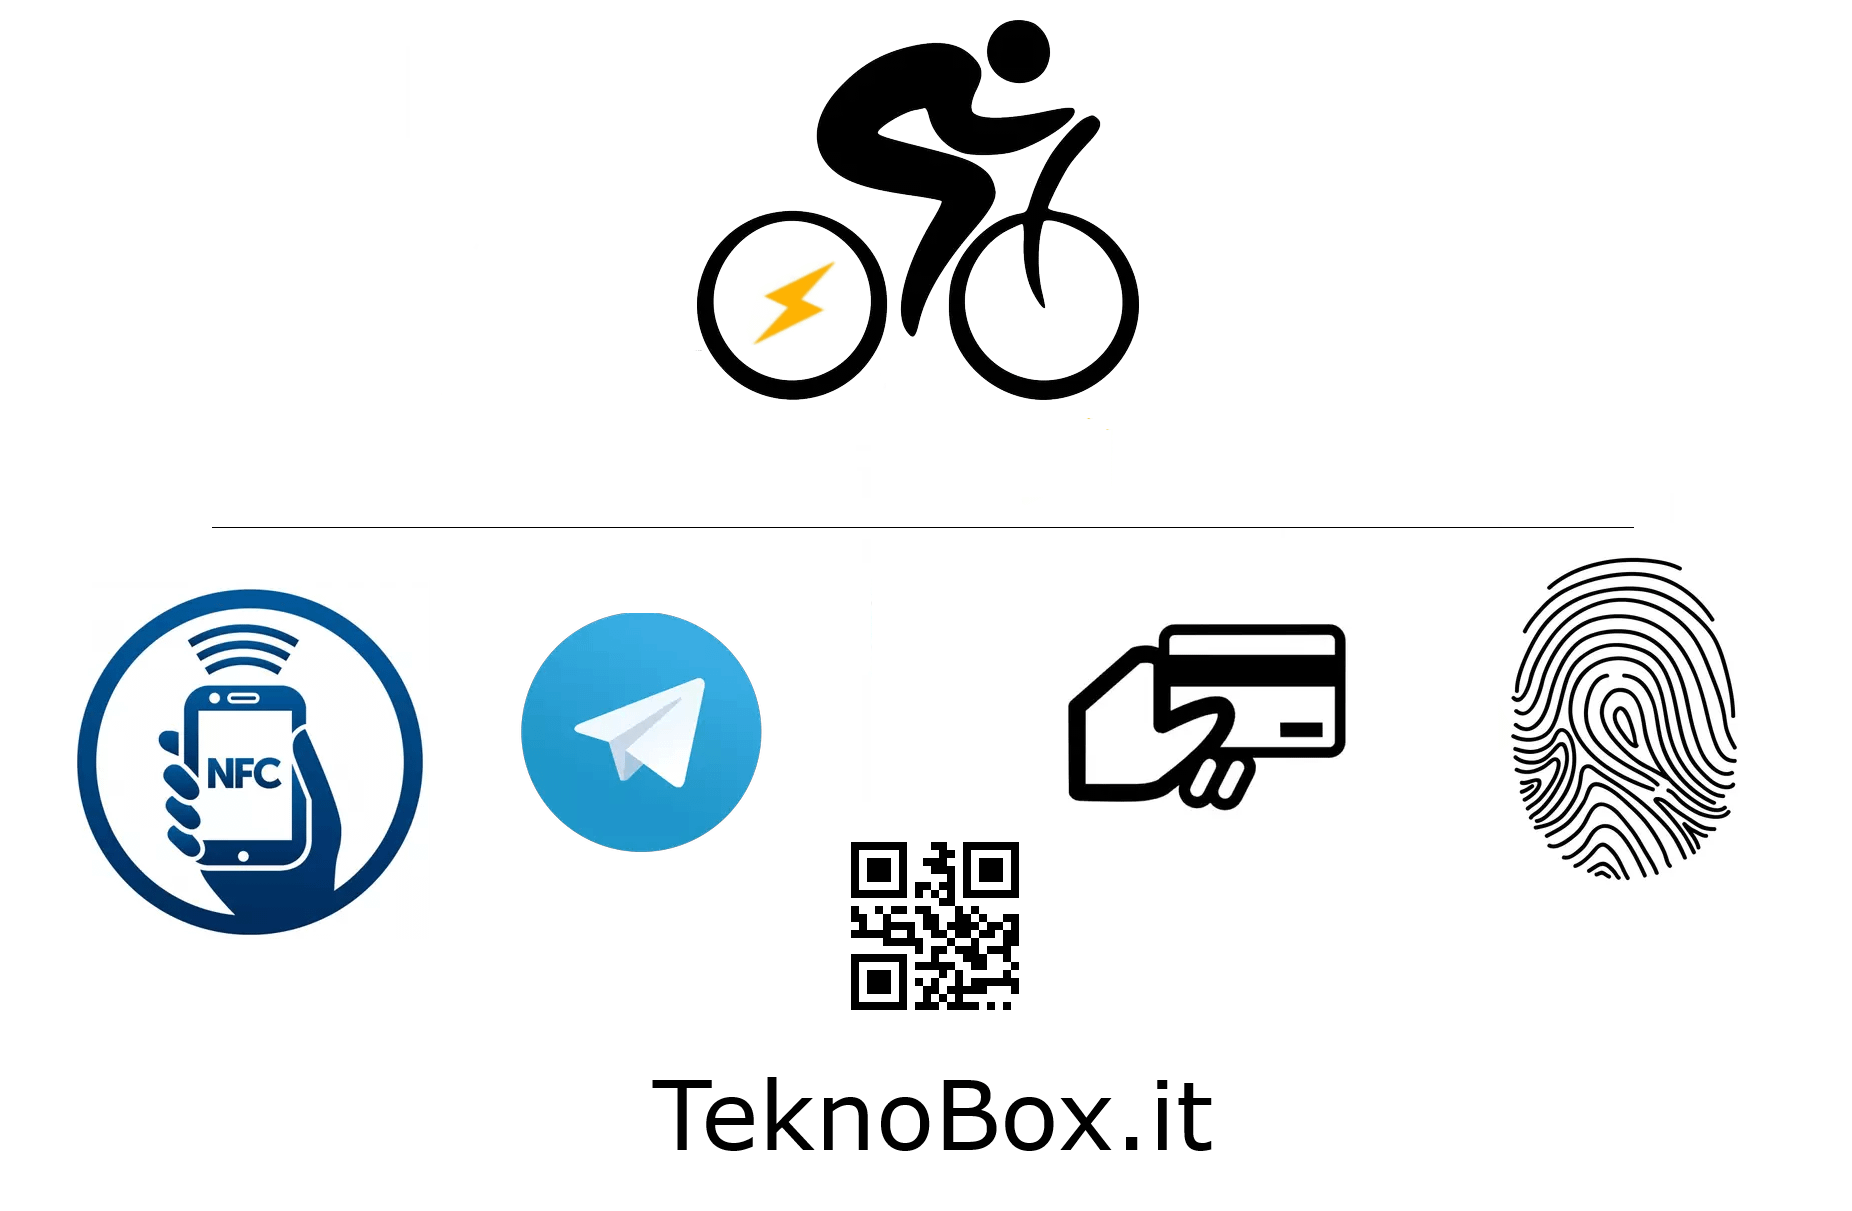 TeknoBox